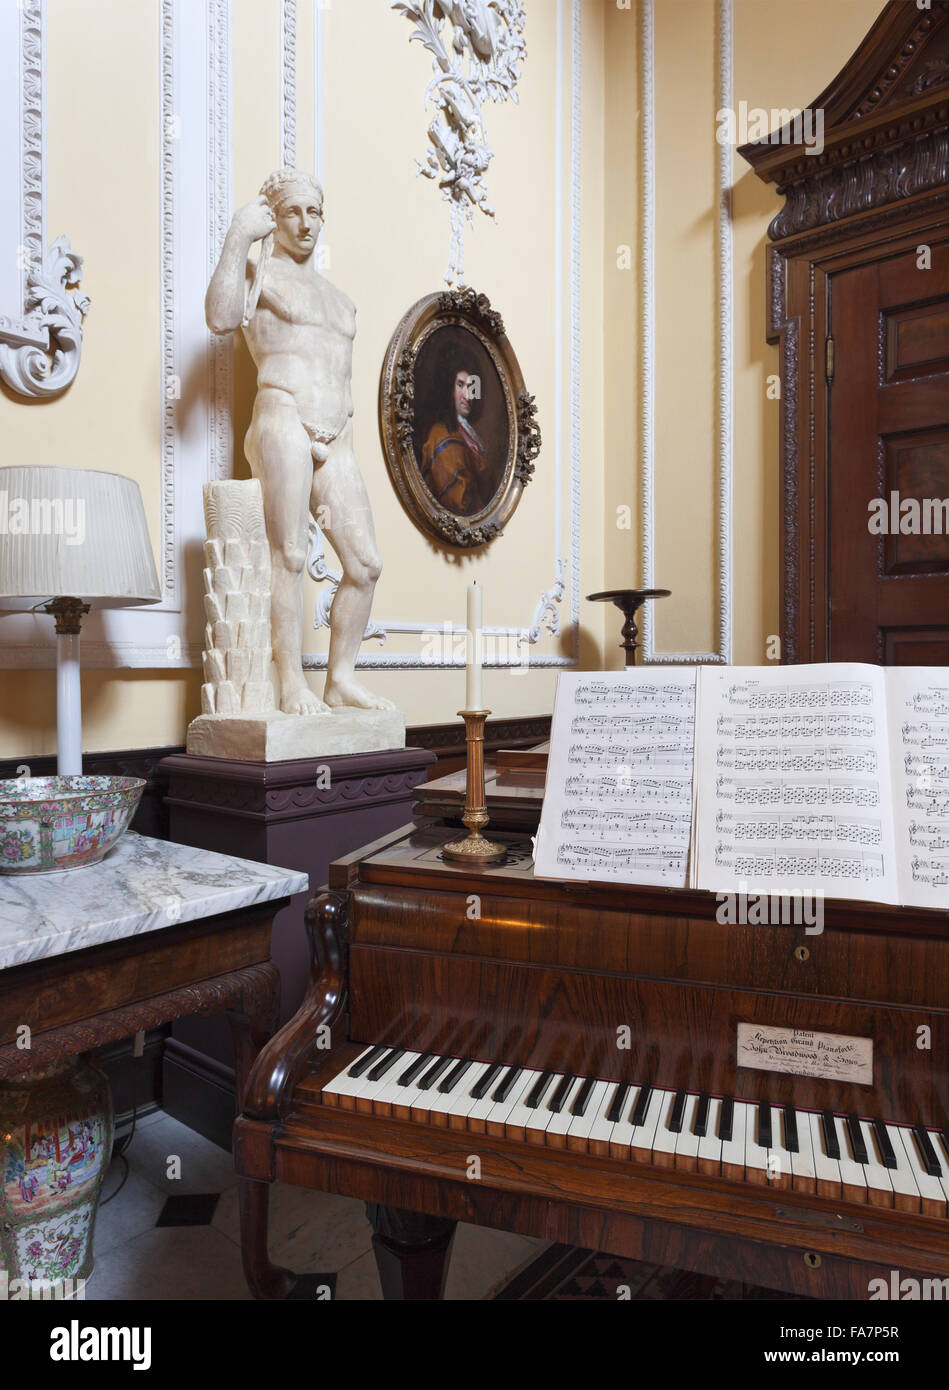 Le grand piano Broadwood, 1847, à partir de la collection Richard Cobbe, dans le hall d'escalier, à Hatchlands Park, Surrey. Ses récitals Chopin anglais sur ce piano. Banque D'Images